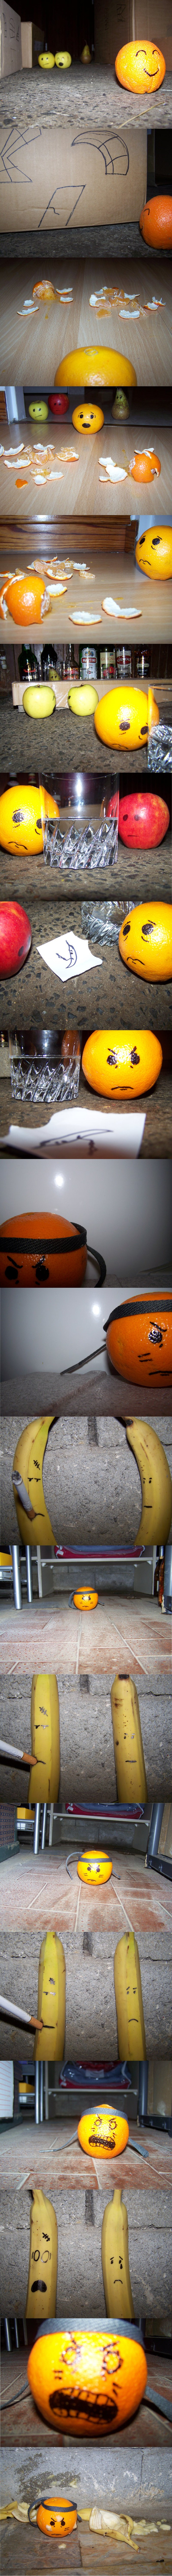 C'est l'histoire d'une orange qui n'est pas contente.